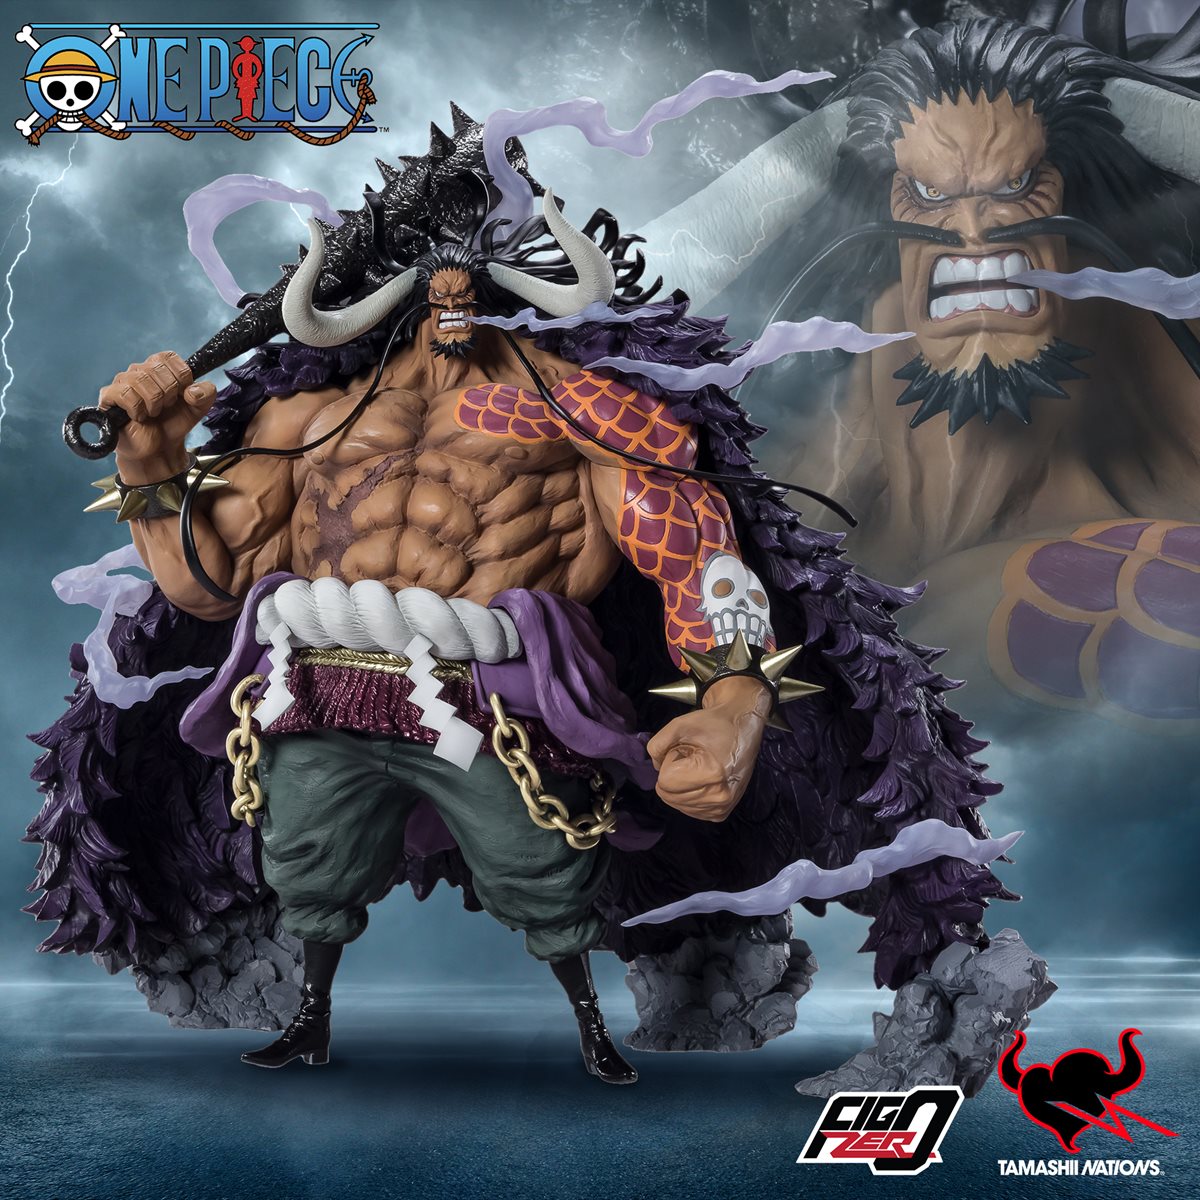  Tamashii Nations - One Piece - [Extra Battle] Kaido